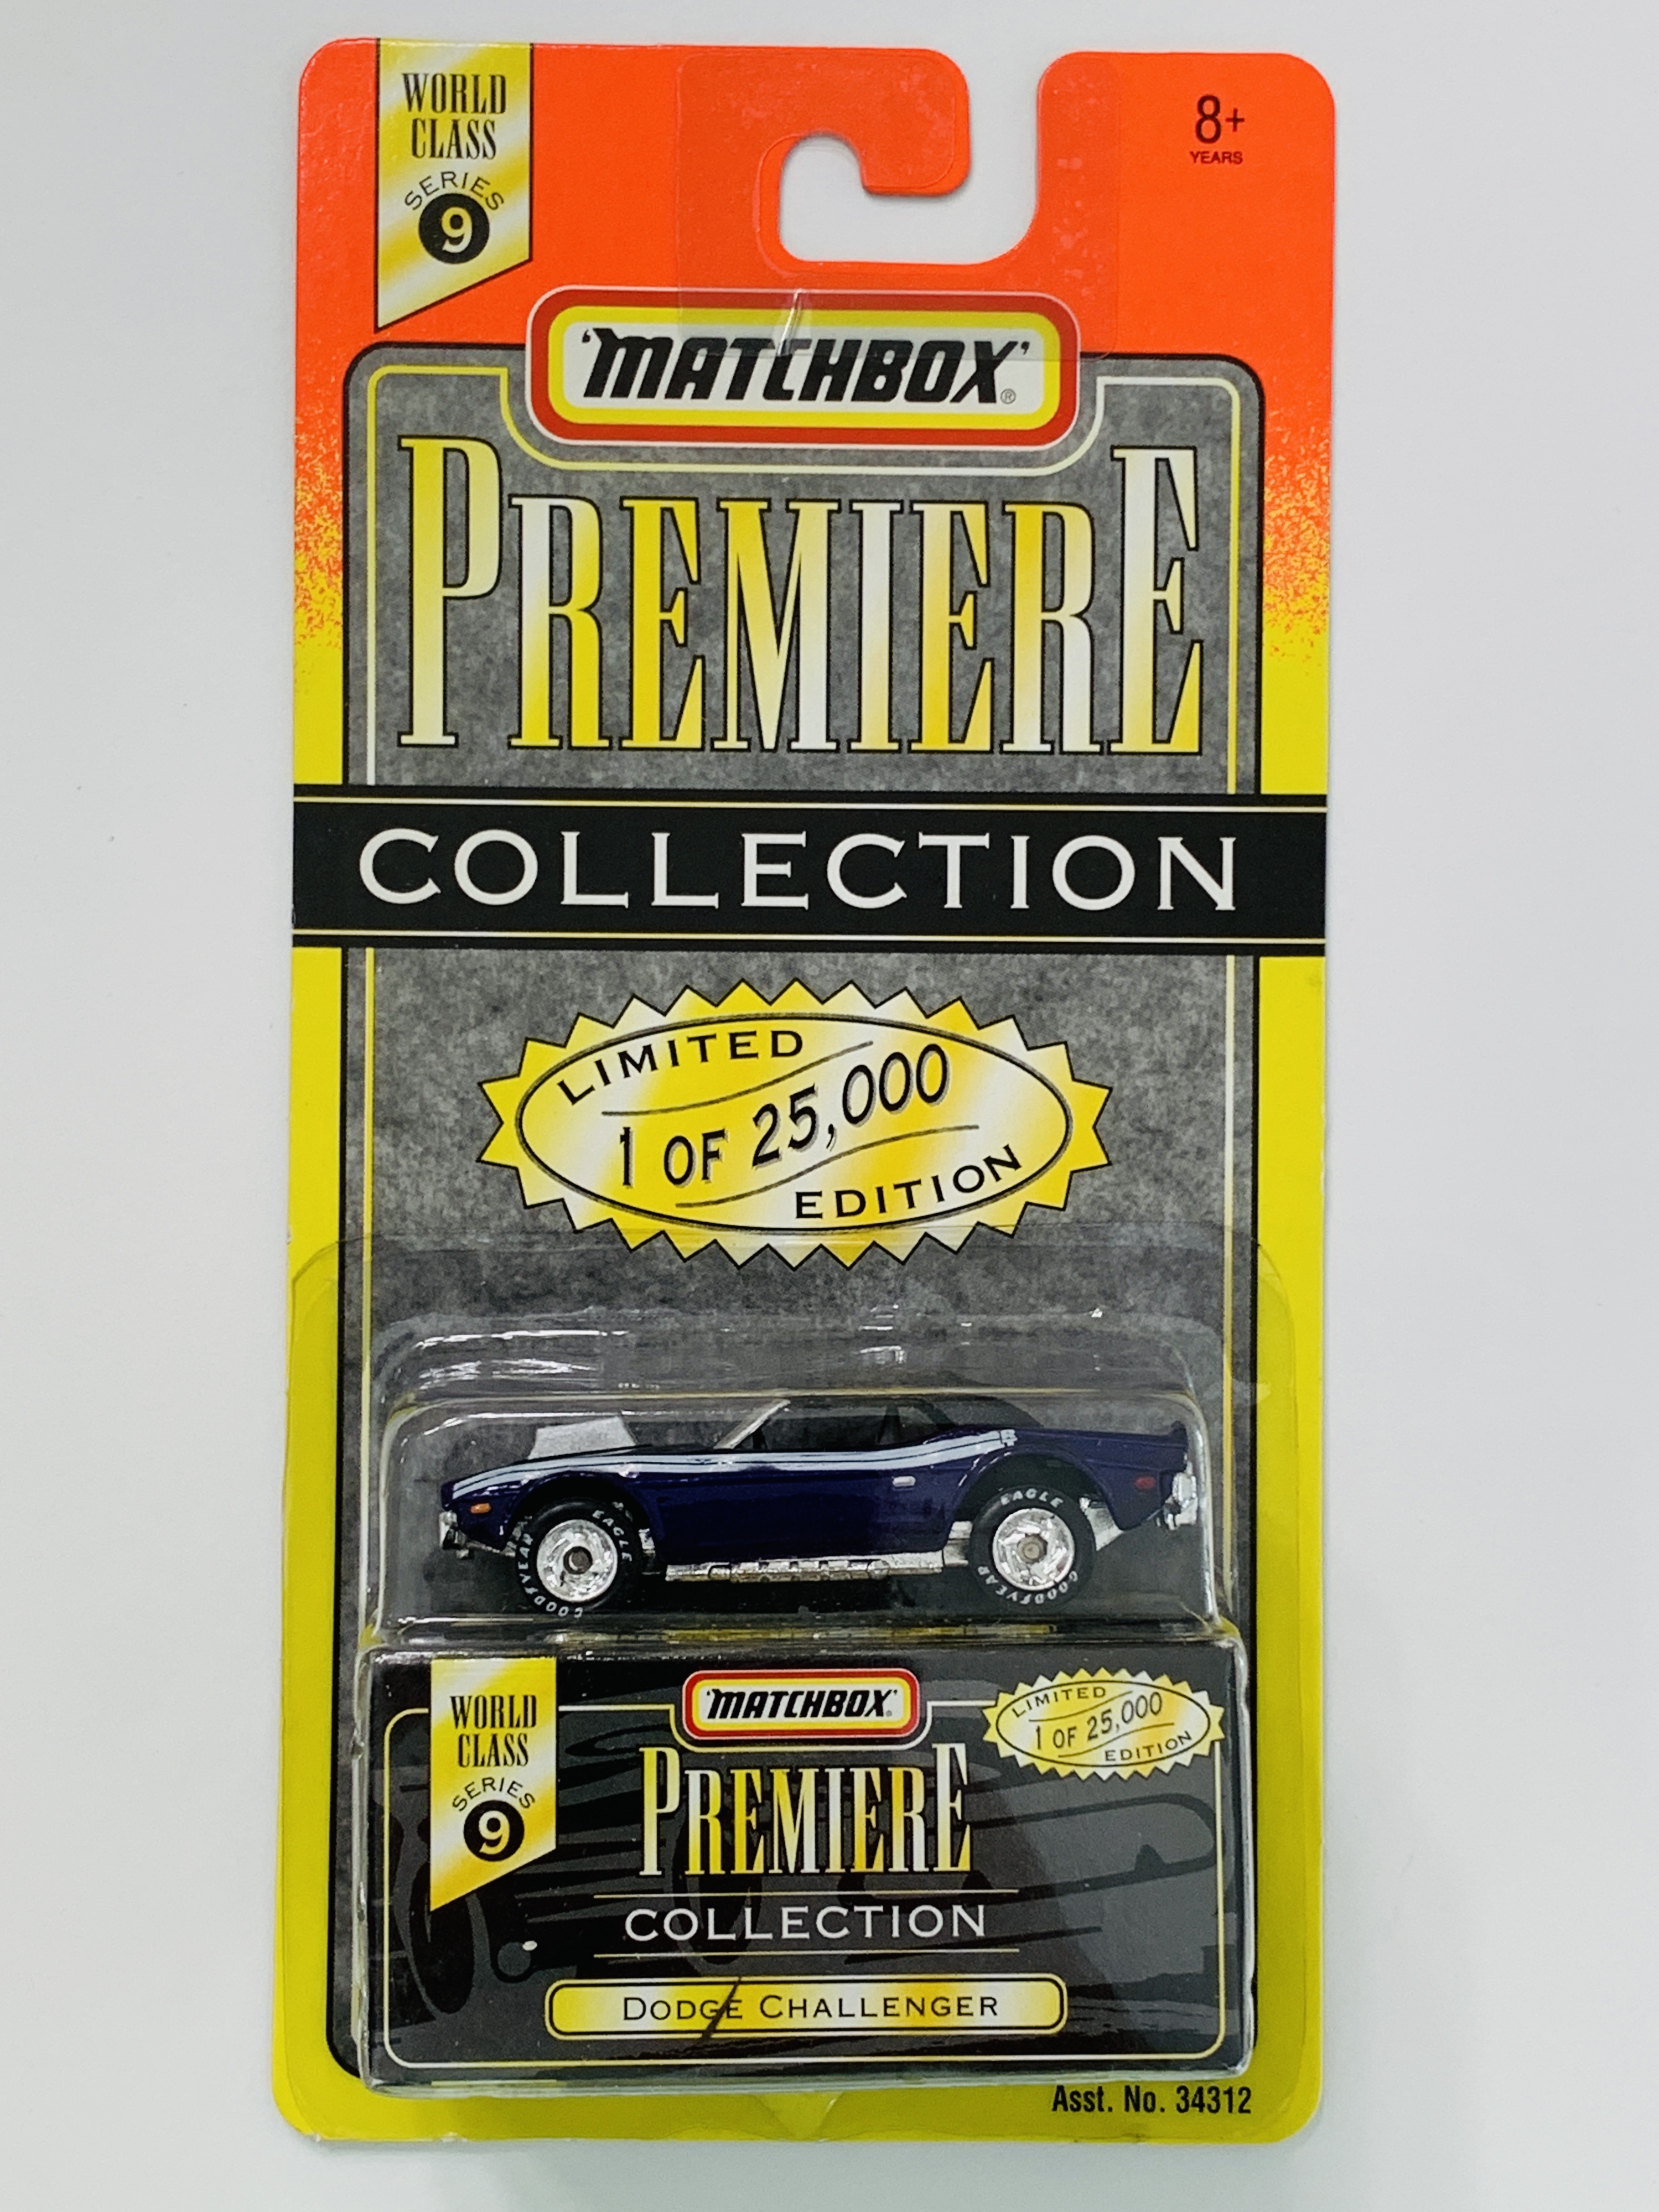 Matchbox Premiere World Class Series 9 Dodge Challenger